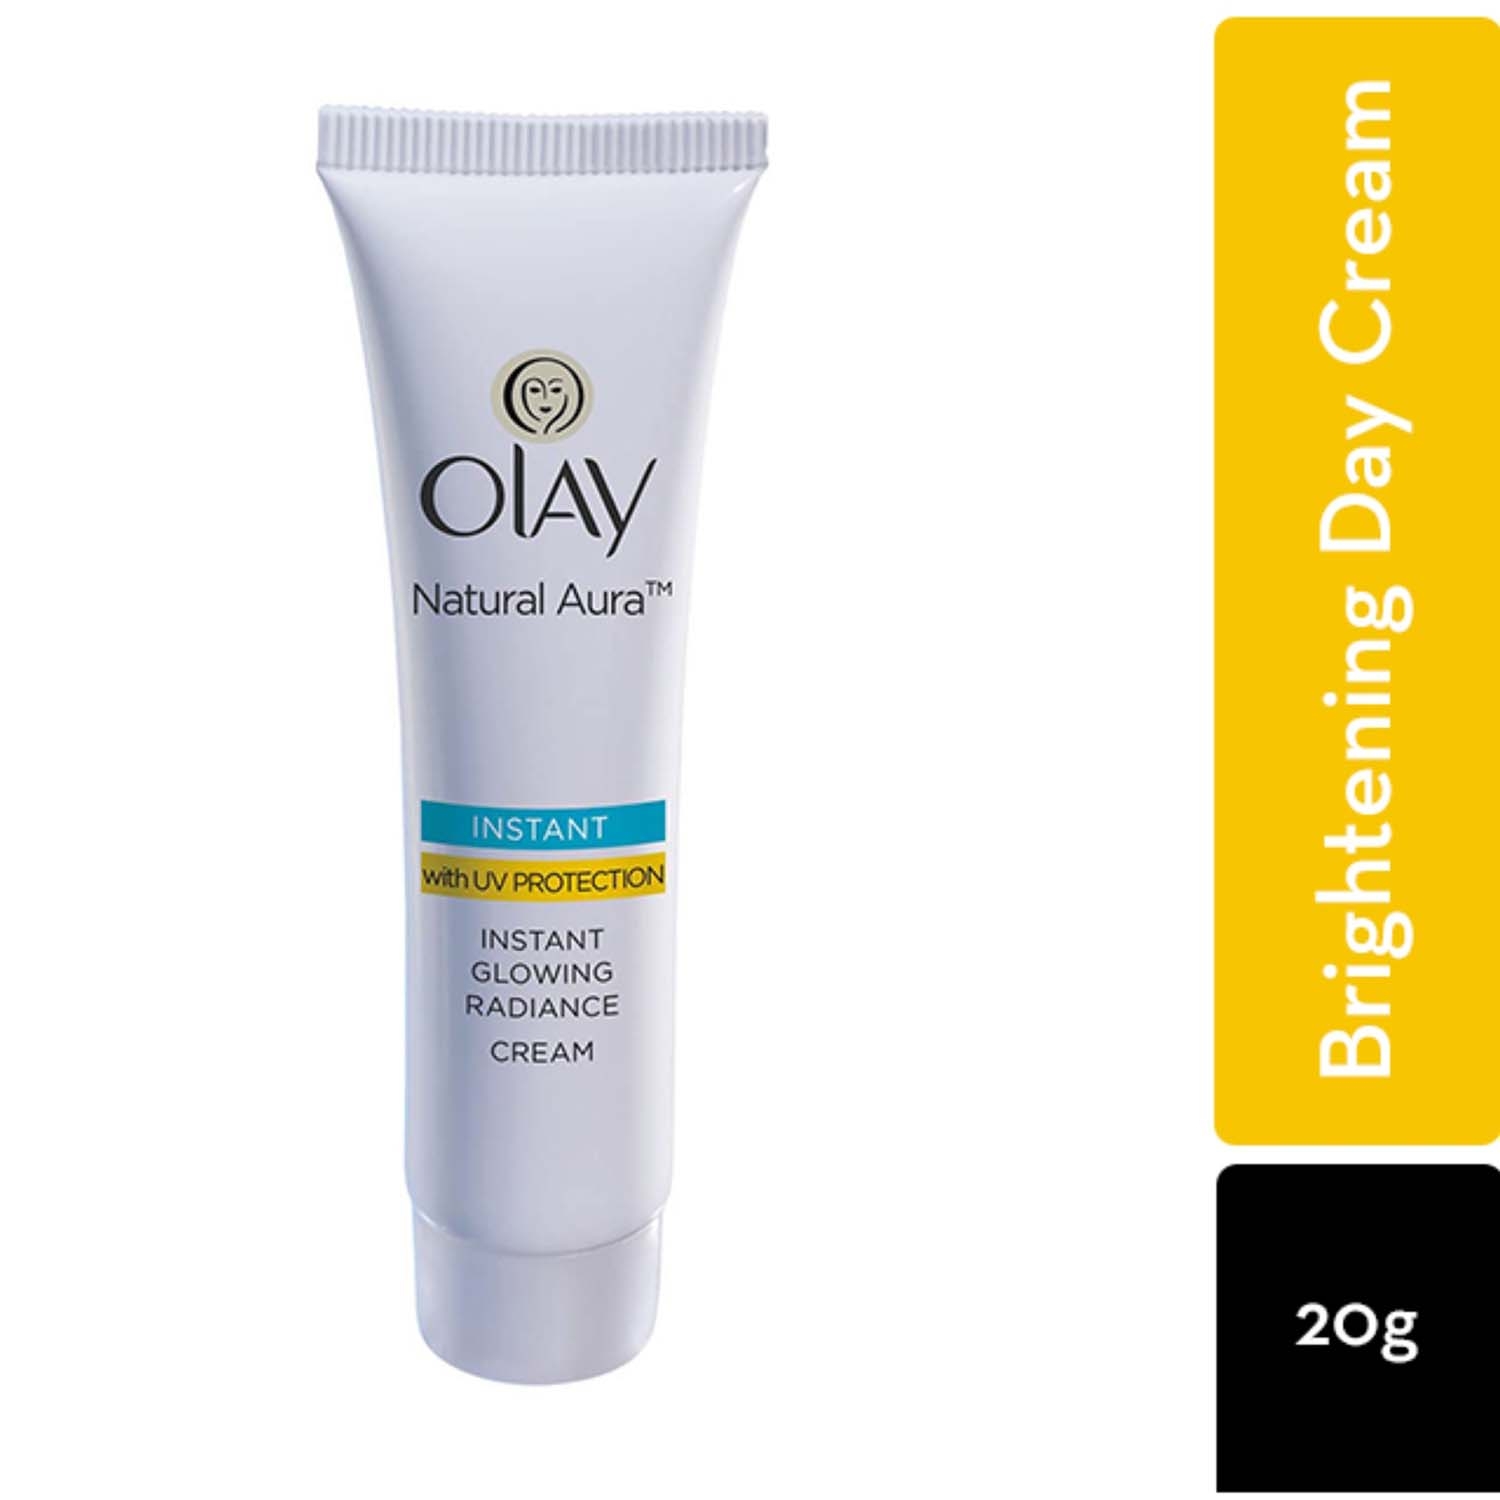 Olay | Olay Natural Aura Radiance Cream (20g)